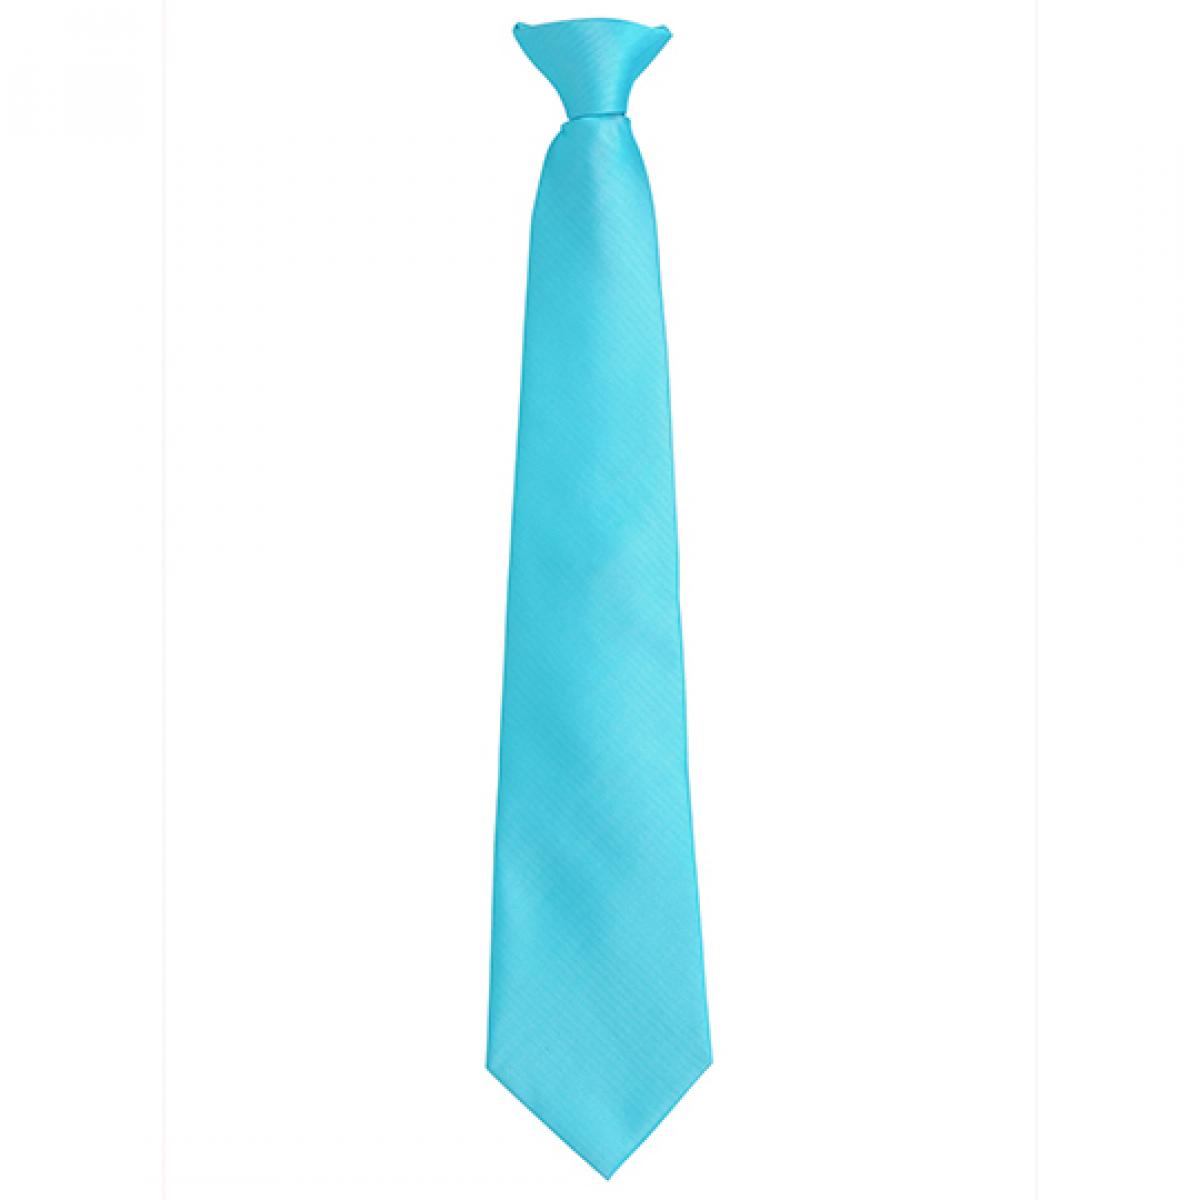 Hersteller: Premier Workwear Herstellernummer: PR785 Artikelbezeichnung: ´Colours´ Fashion Clip Tie Farbe: Turquoise (ca. Pantone 7710C)